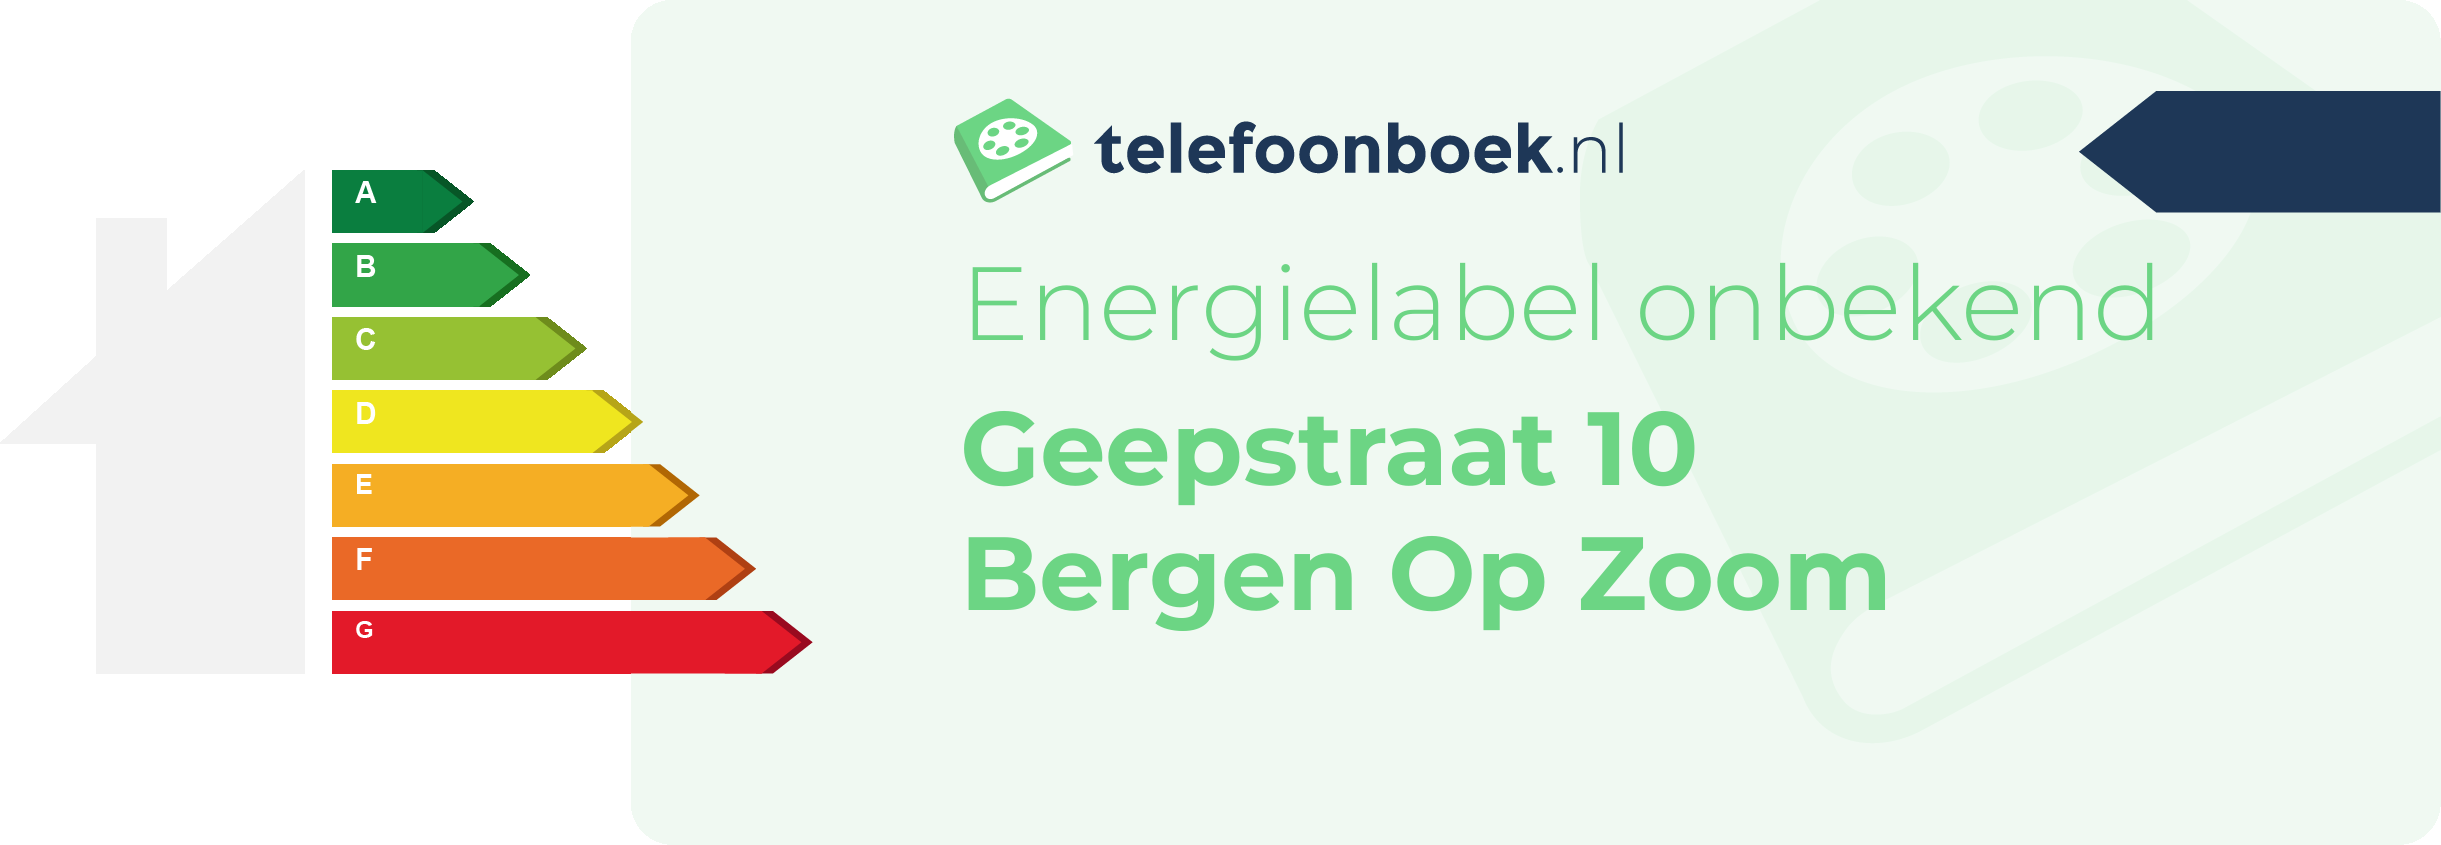 Energielabel Geepstraat 10 Bergen Op Zoom